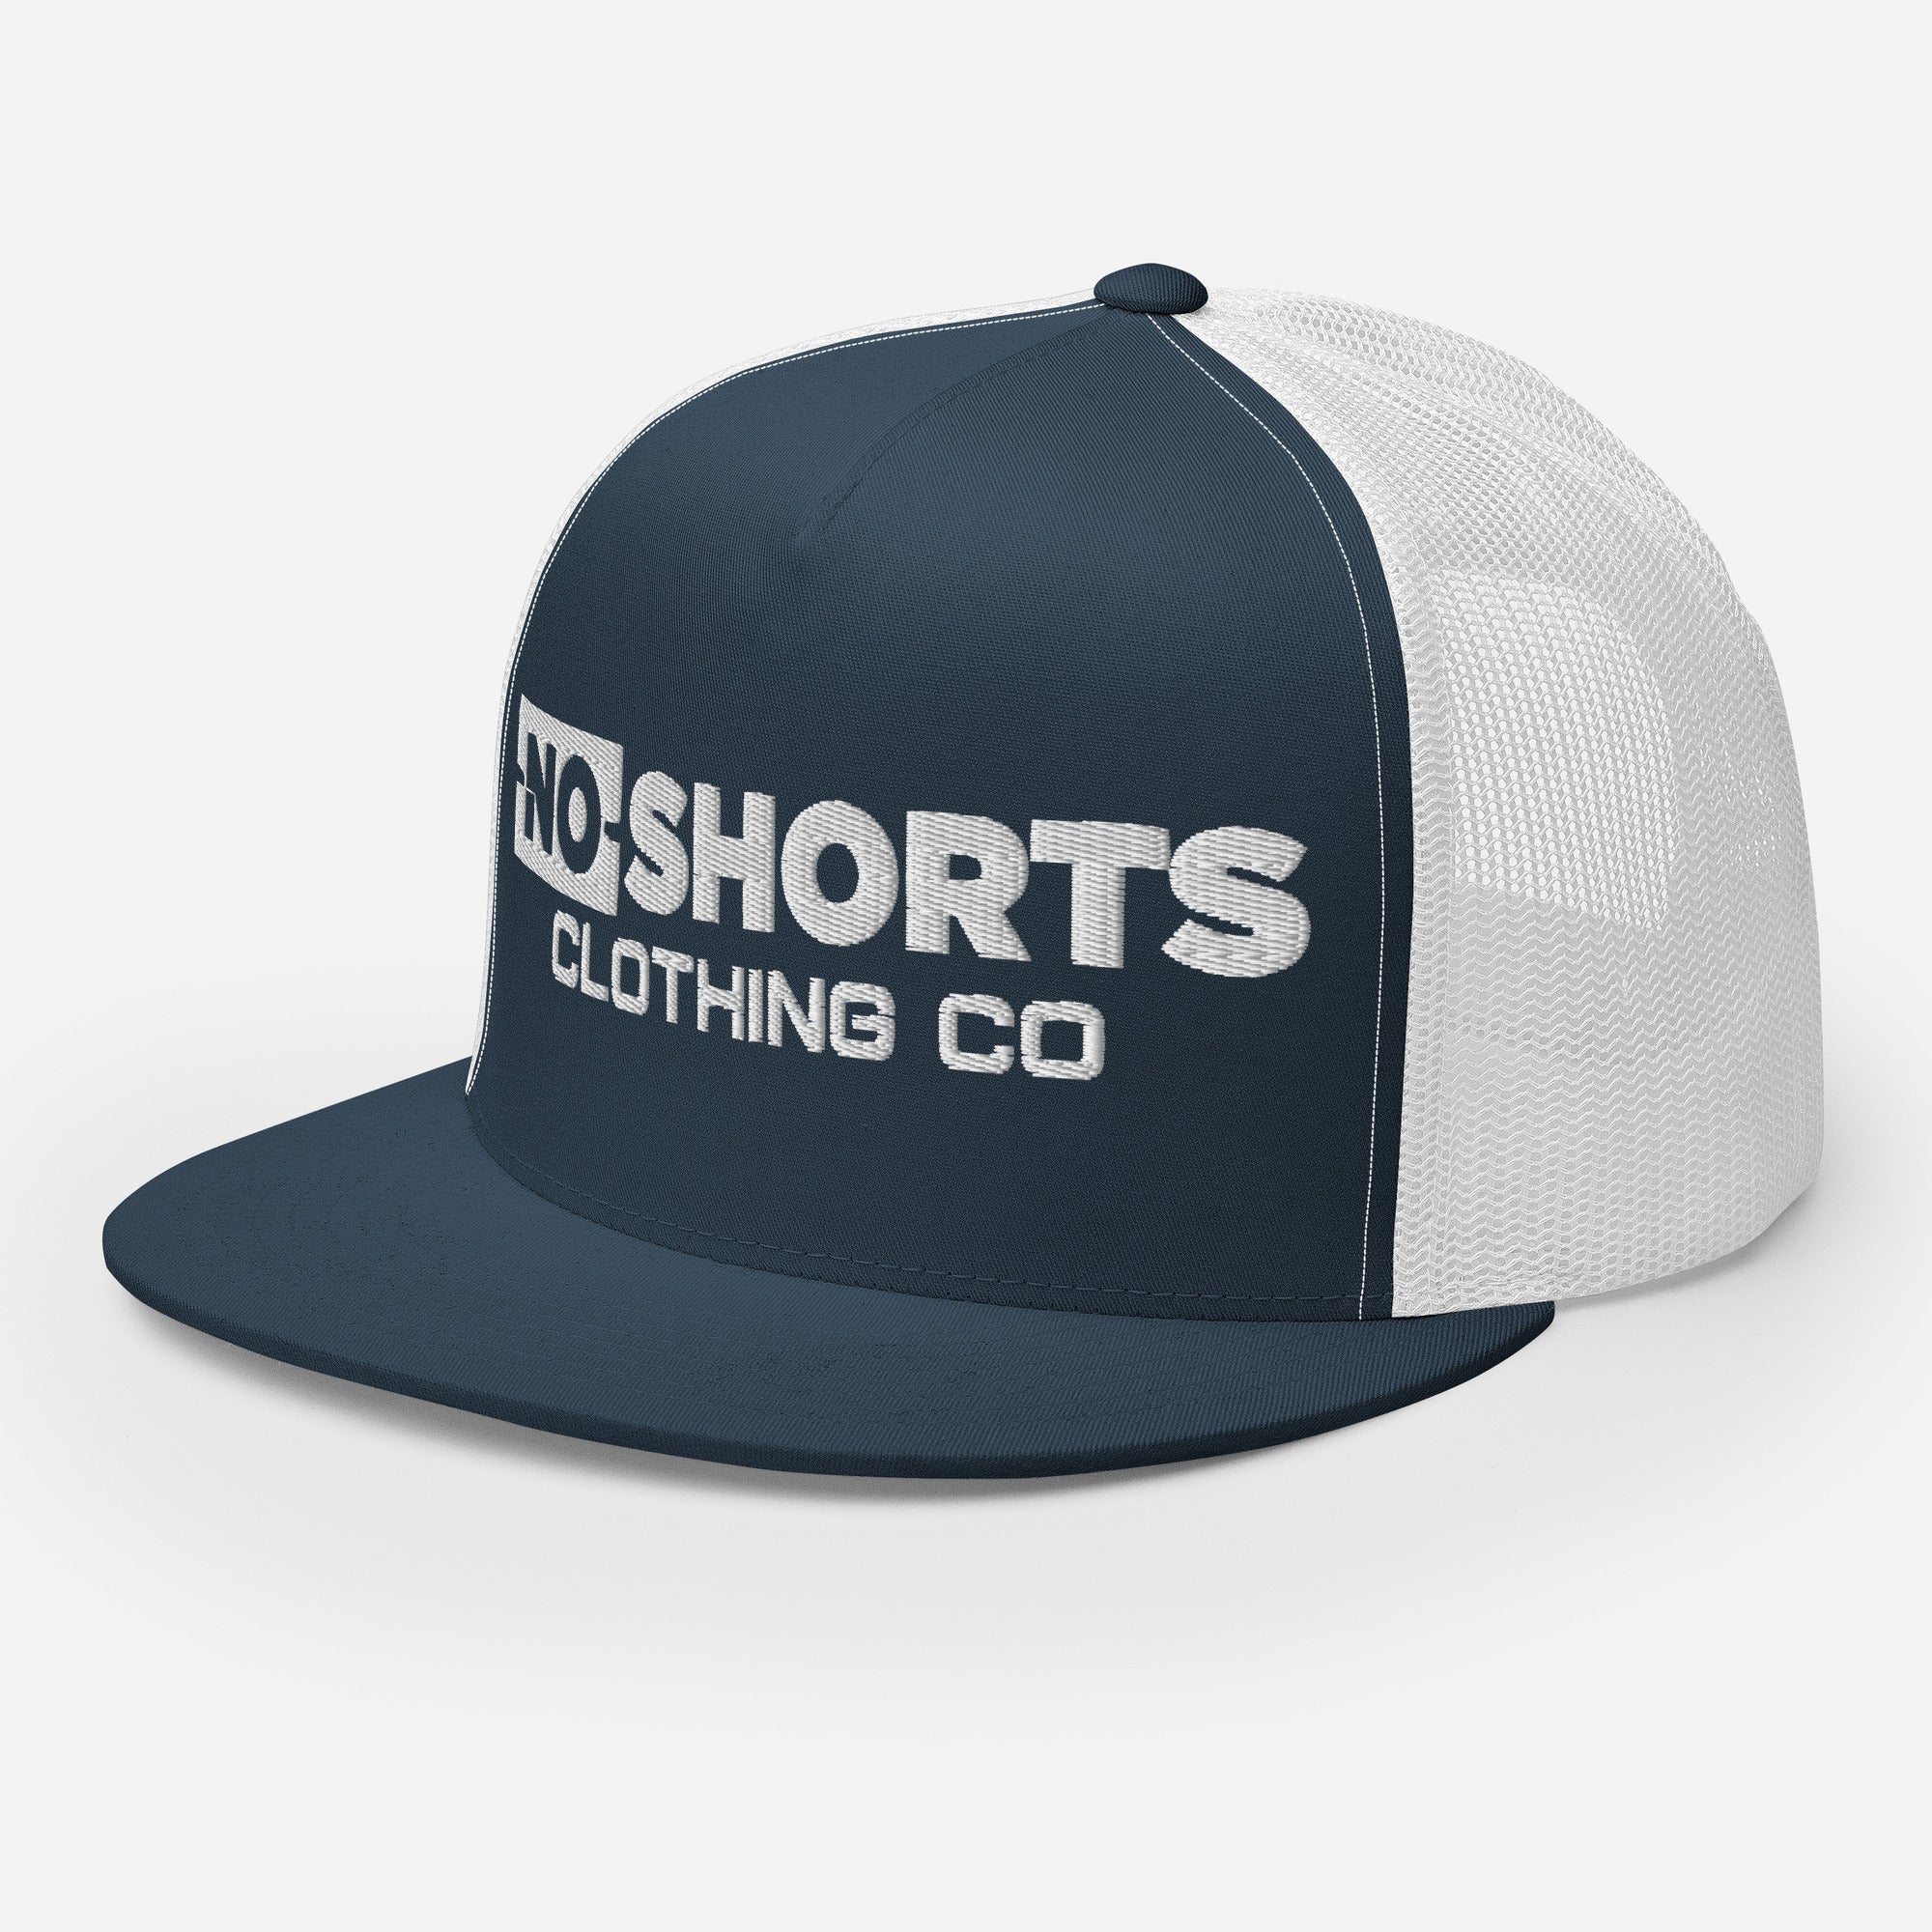 NO SHORTS CC Trucker Cap